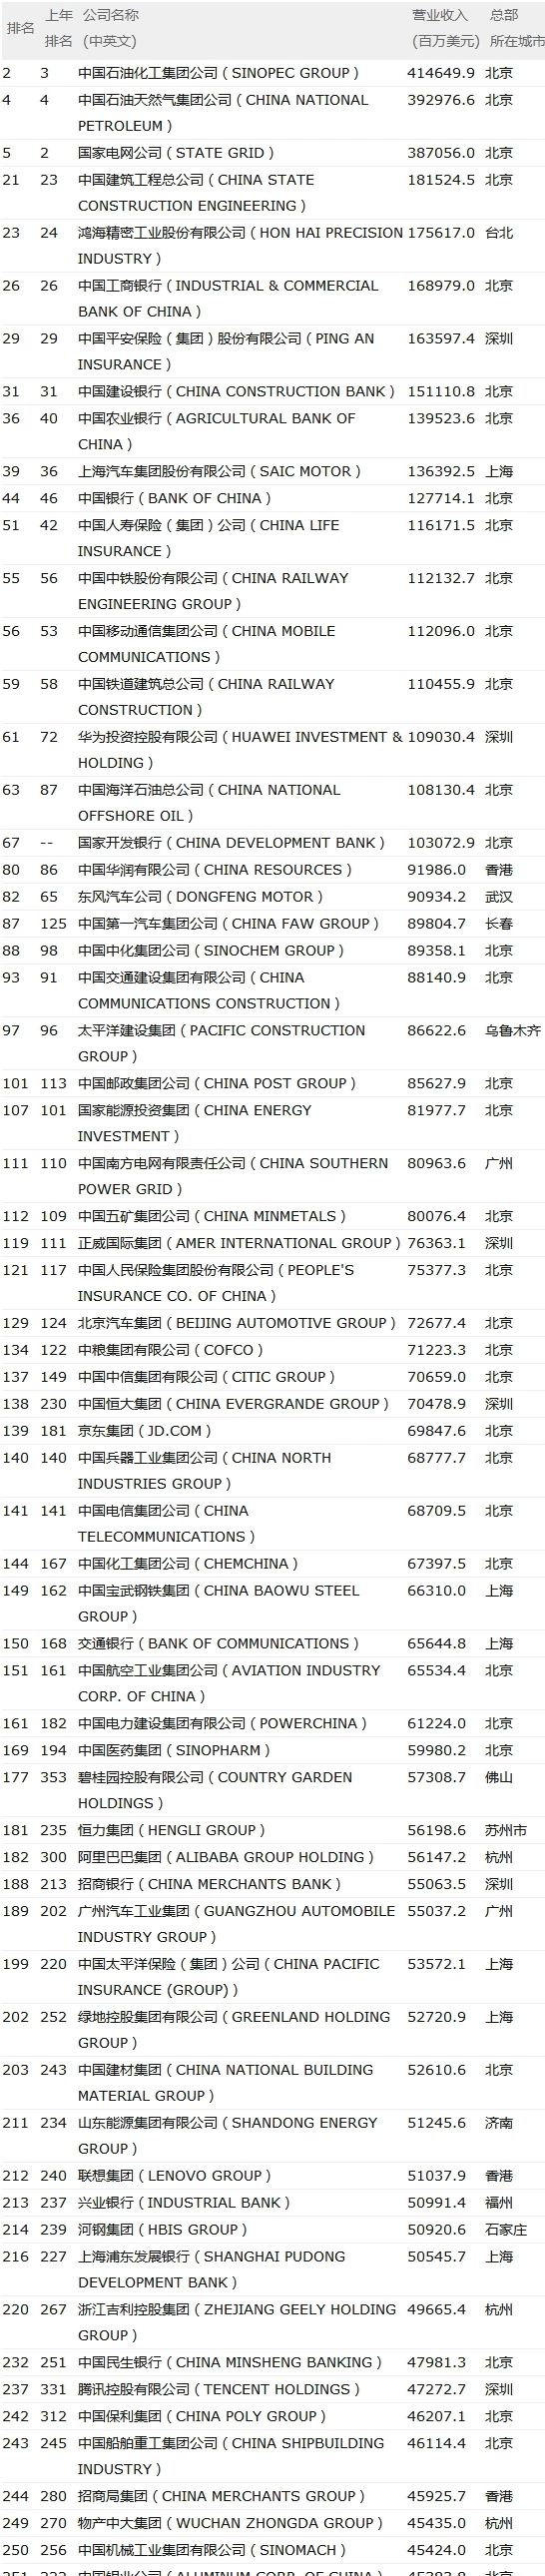 中国上榜世界500强公司数，首次超过美国808 / 作者:一条龙 / 帖子ID:268308